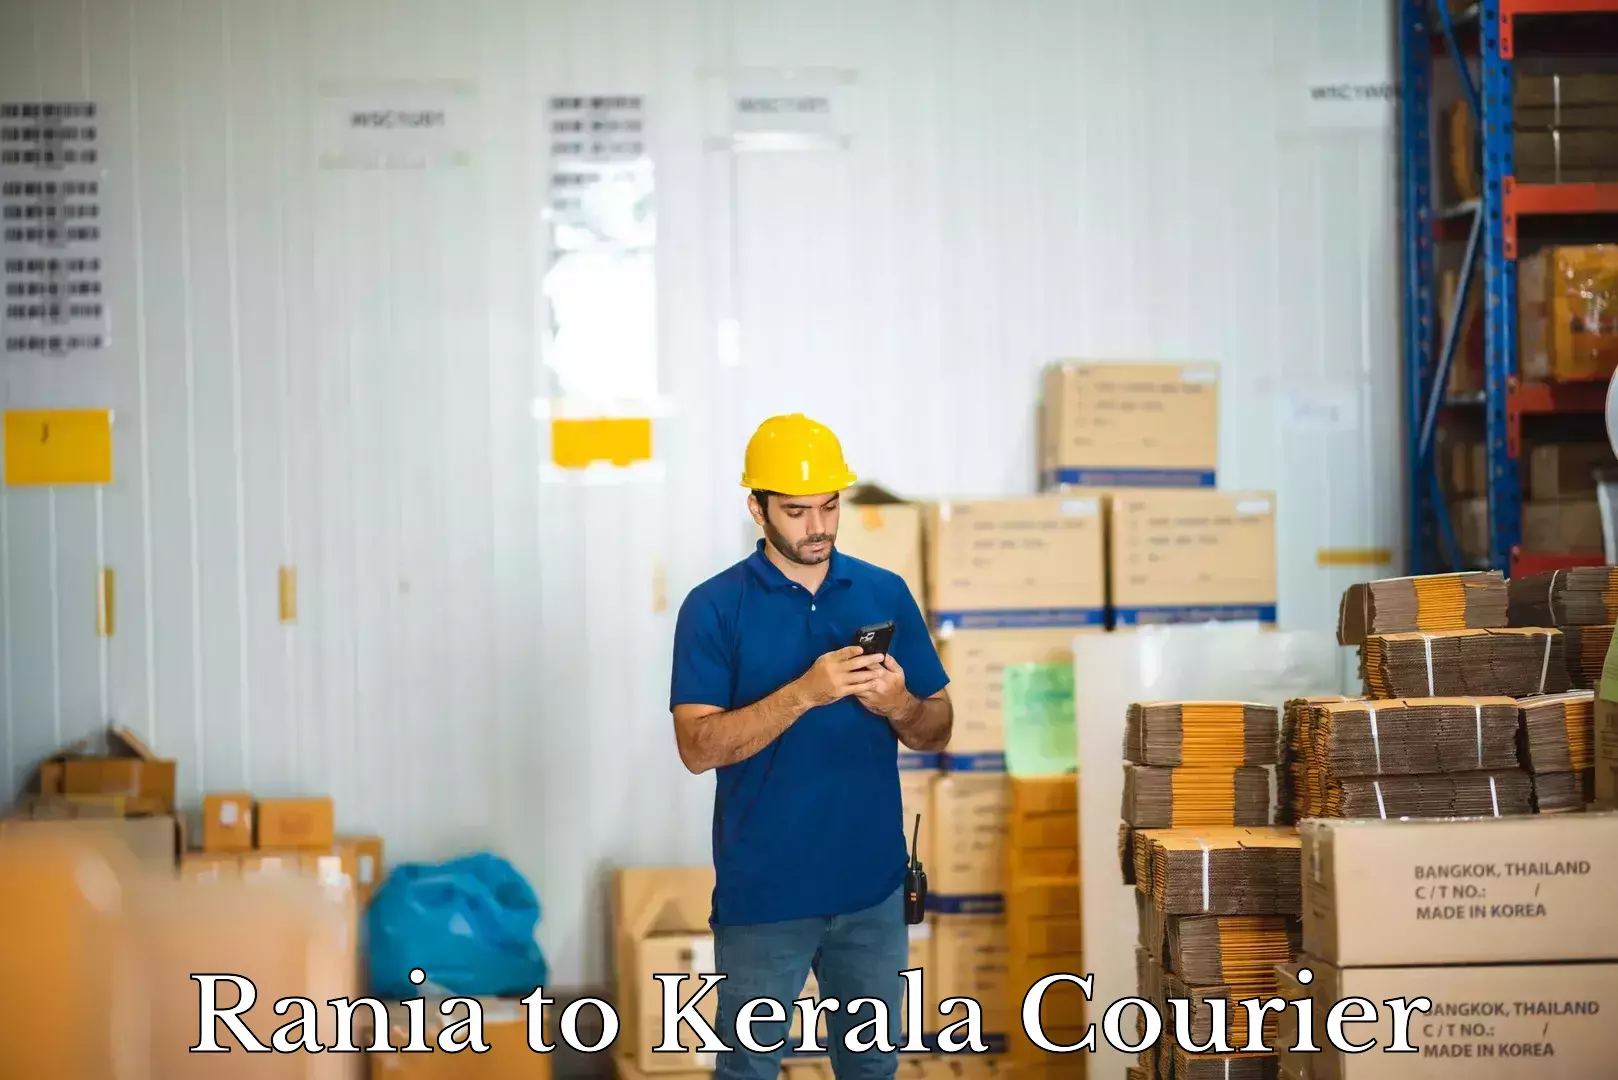 Baggage shipping experts Rania to Kerala